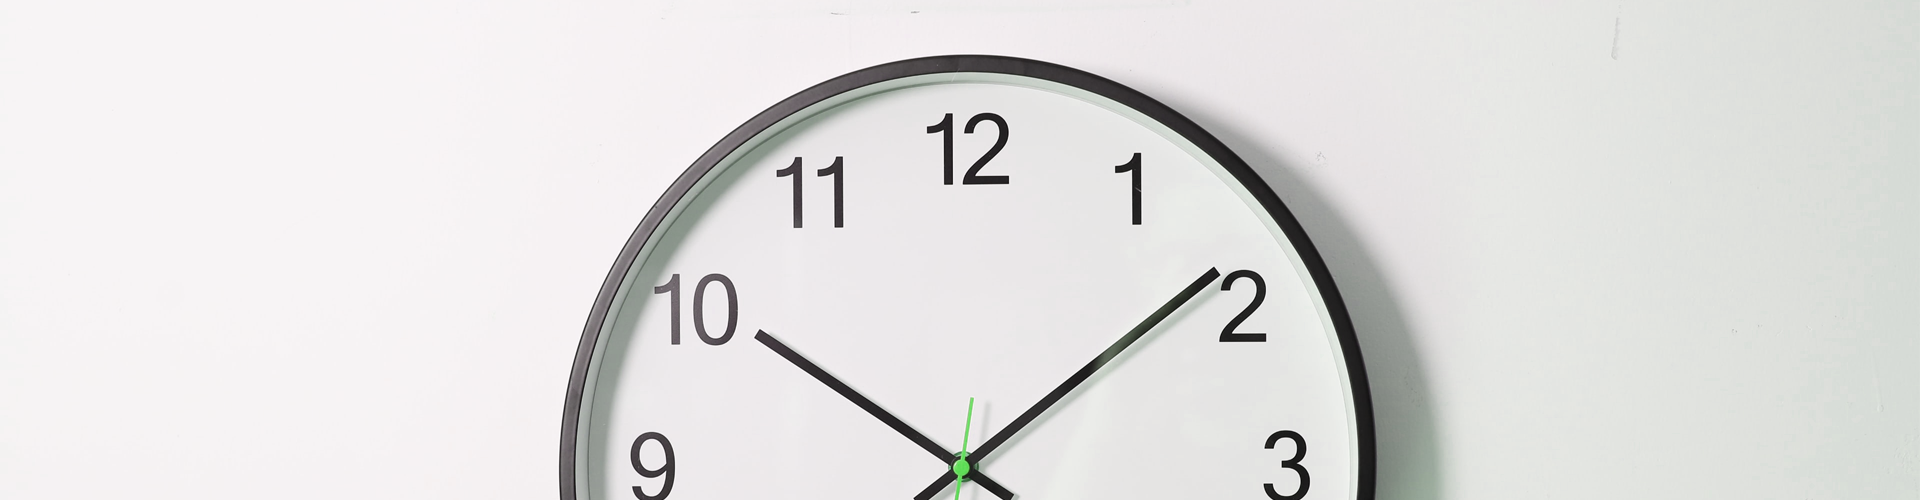 Préstamo Express - Imagen con un reloj transmitiendo la rapidez de contratación del Préstamo Express